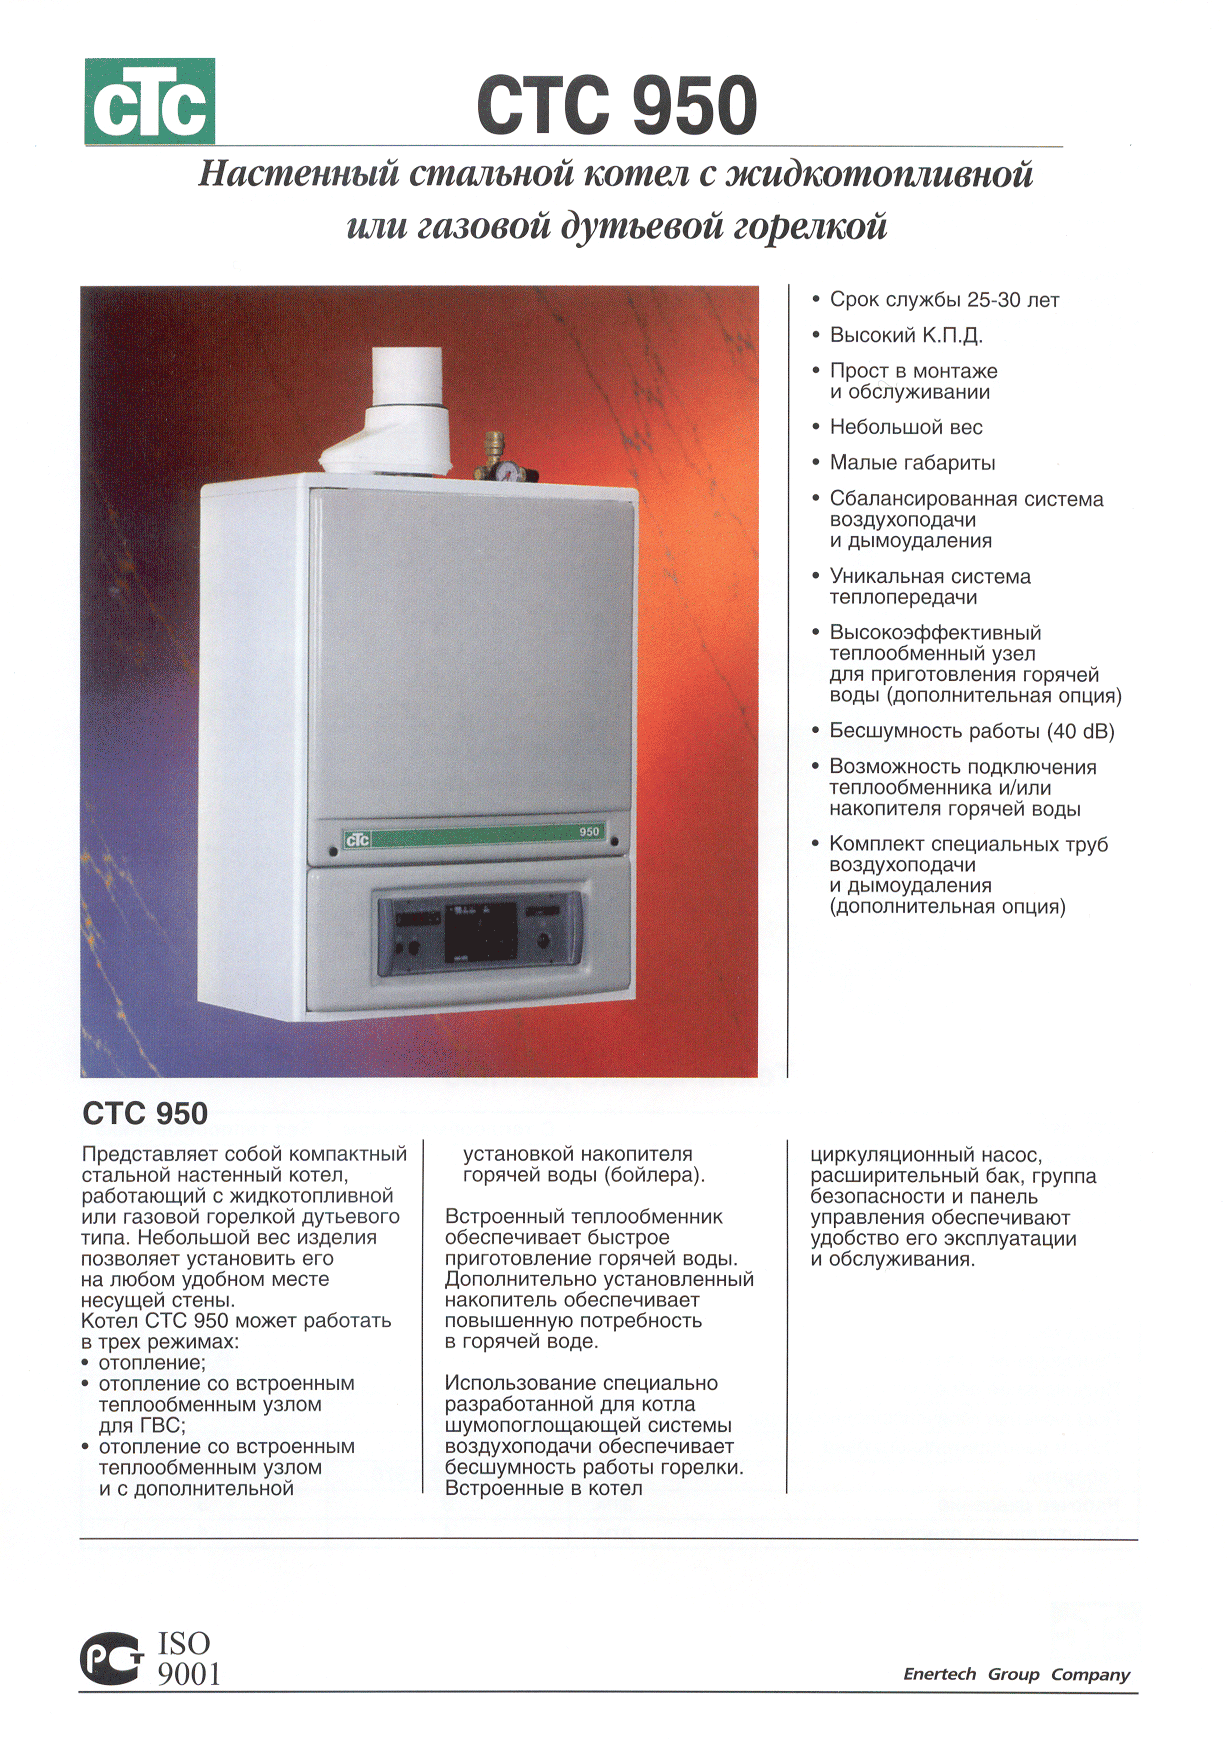 Описание CTC 950 RU